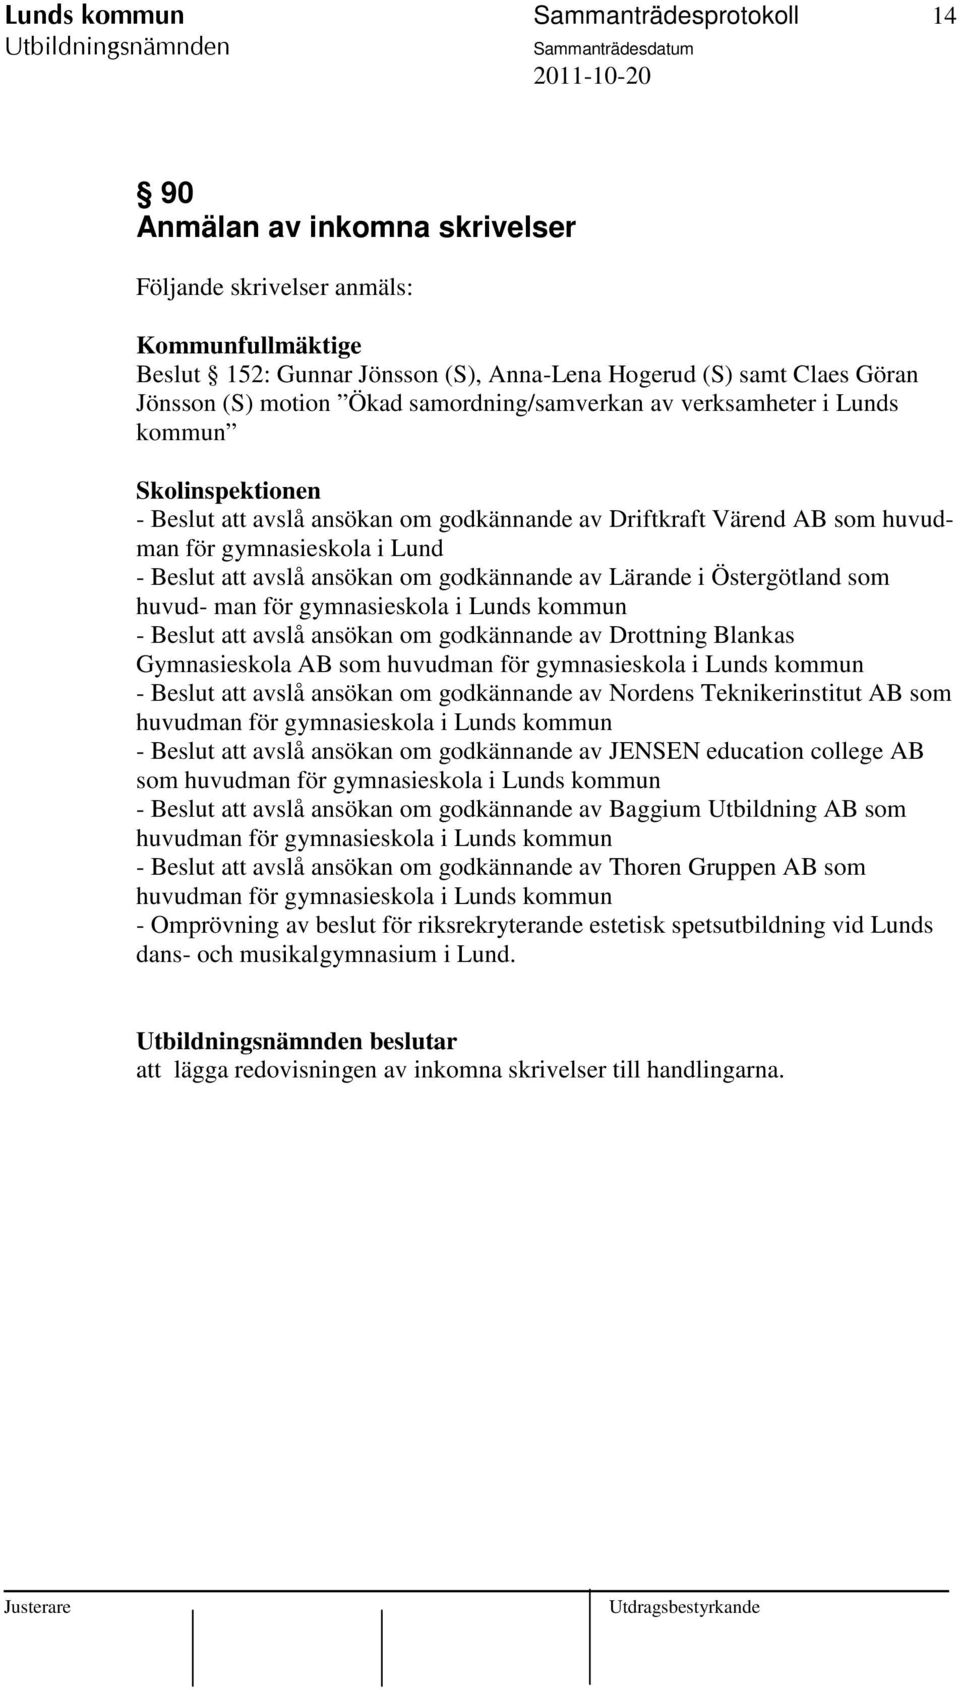 avslå ansökan om godkännande av Lärande i Östergötland som huvud- man för gymnasieskola i Lunds kommun - Beslut att avslå ansökan om godkännande av Drottning Blankas Gymnasieskola AB som huvudman för